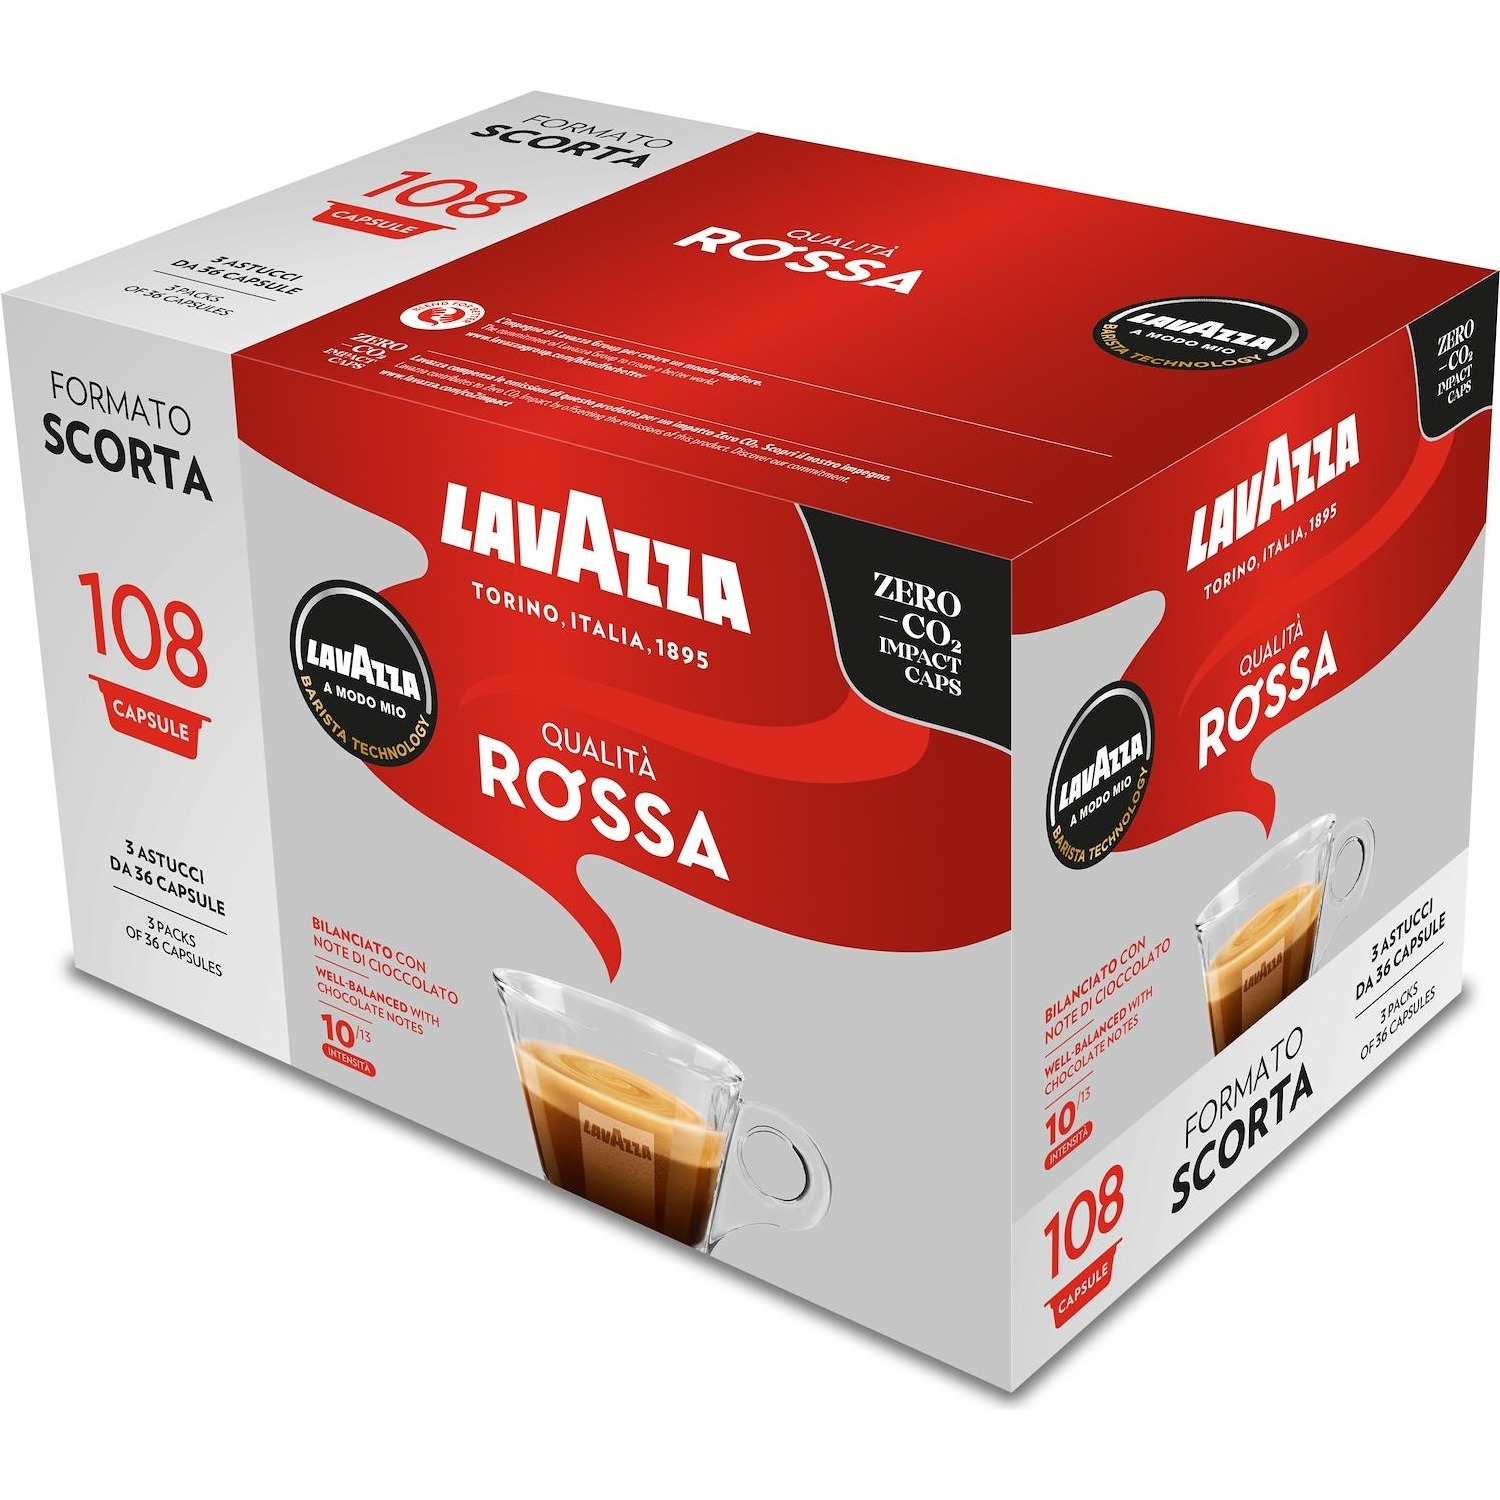 Capsule Caffe' Lavazza A Modo Mio Qualita' Rossa 108 capsule Limited  Edition - DIMOStore